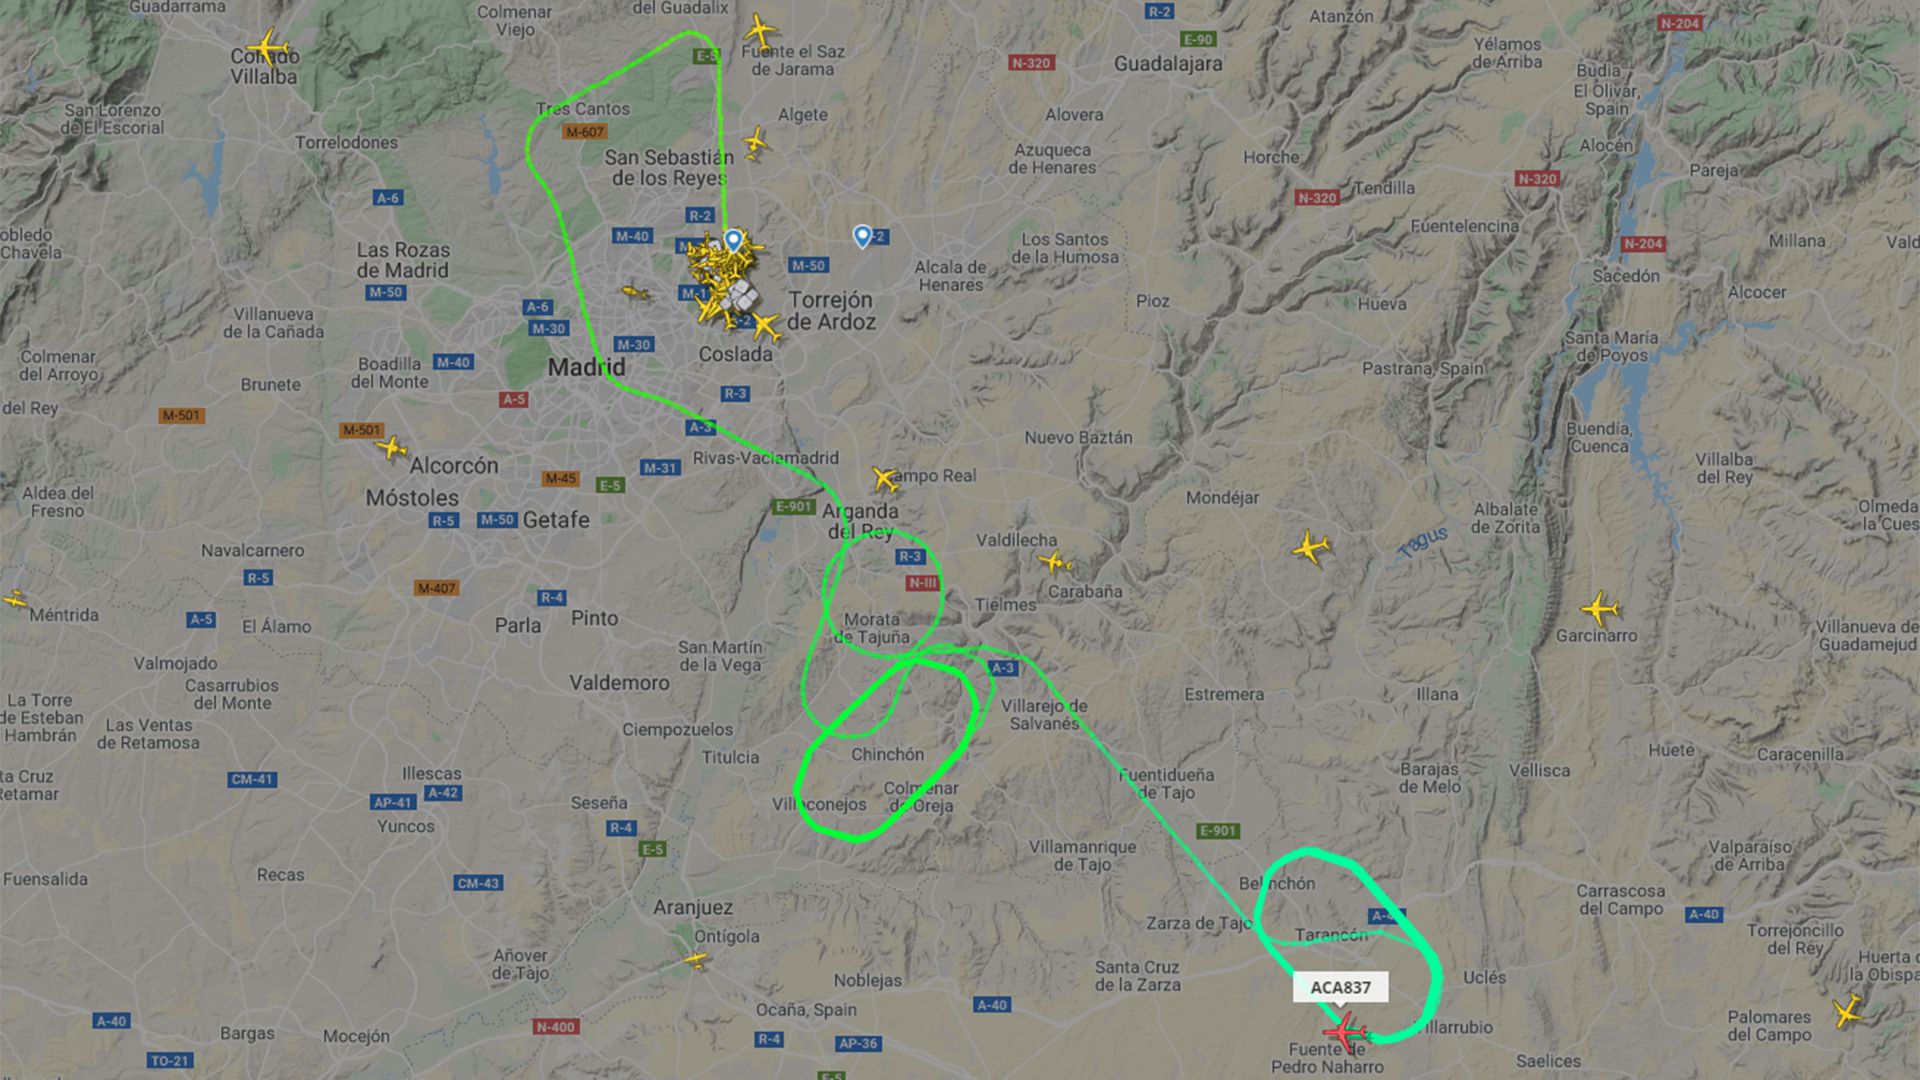 El vuelo AC 837 de Air Canadá se encuentra sobrevolando en círculo en un área cercana a Madrid para consumir combustible antes de realizar su aterrizaje de emergencia